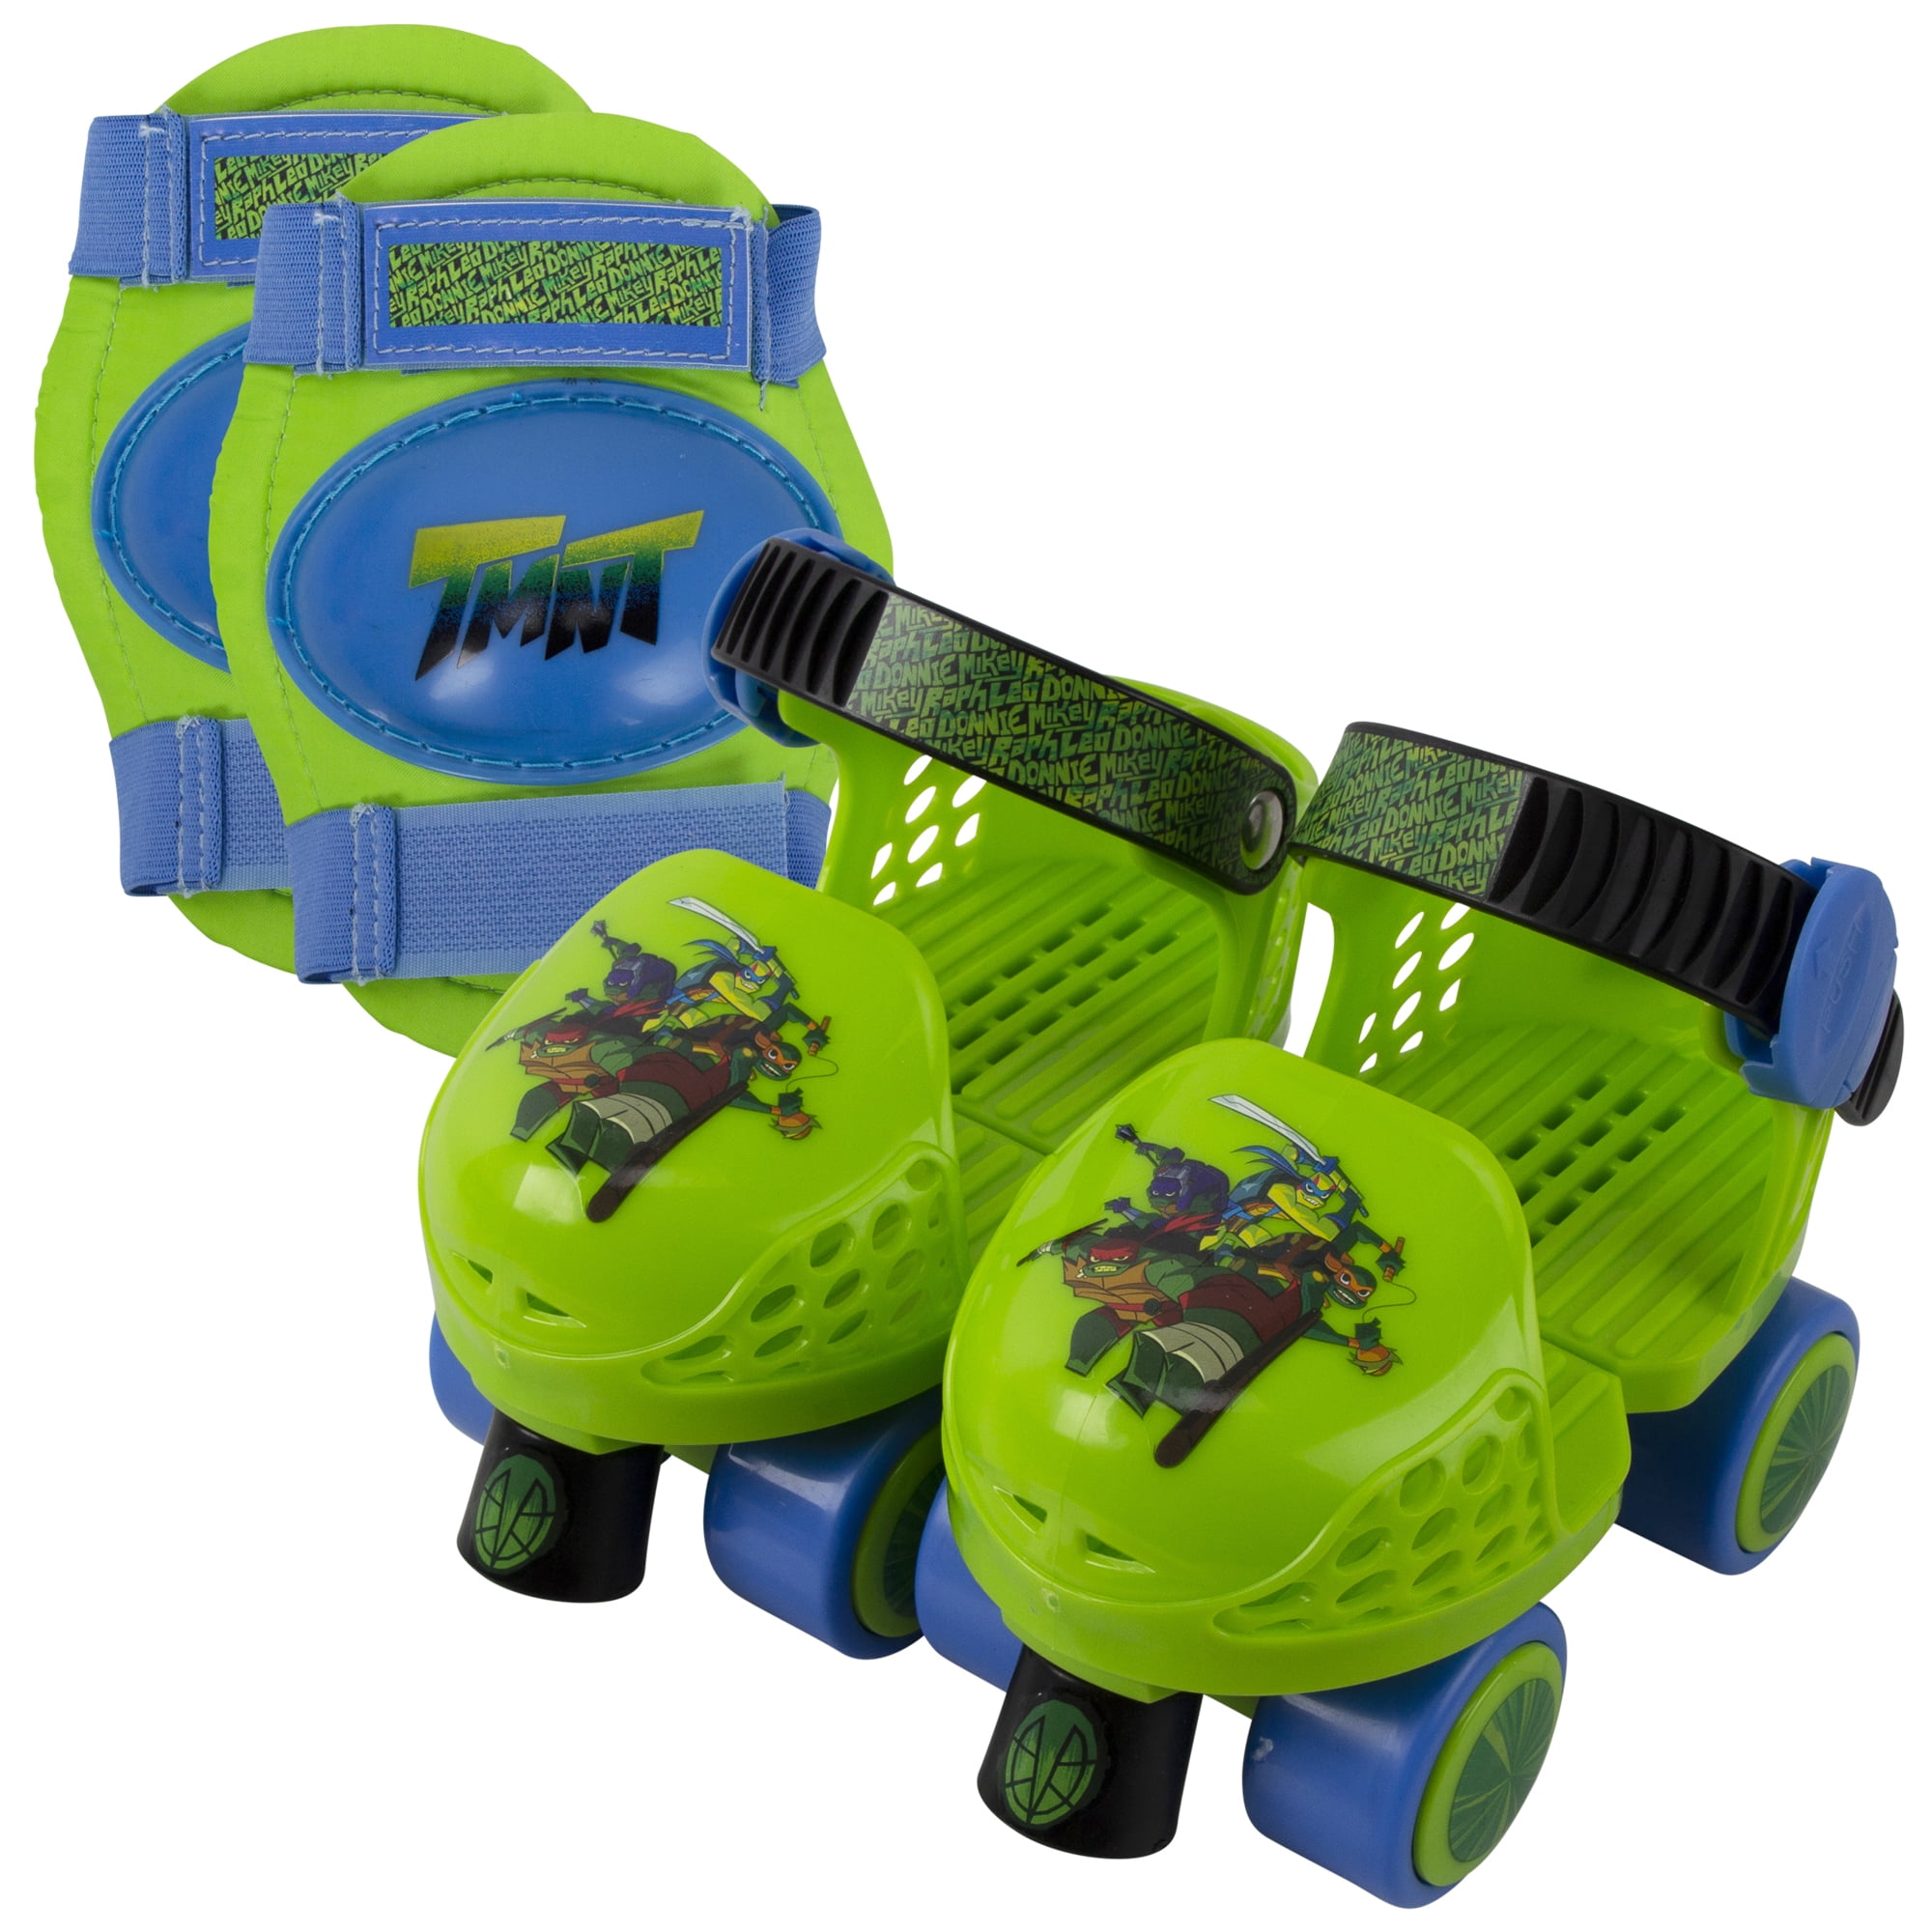 PlayWheels Teenage Mutant Ninja Turtles Roller Skates with Knee Pads and Helmet Junior Size 6-12